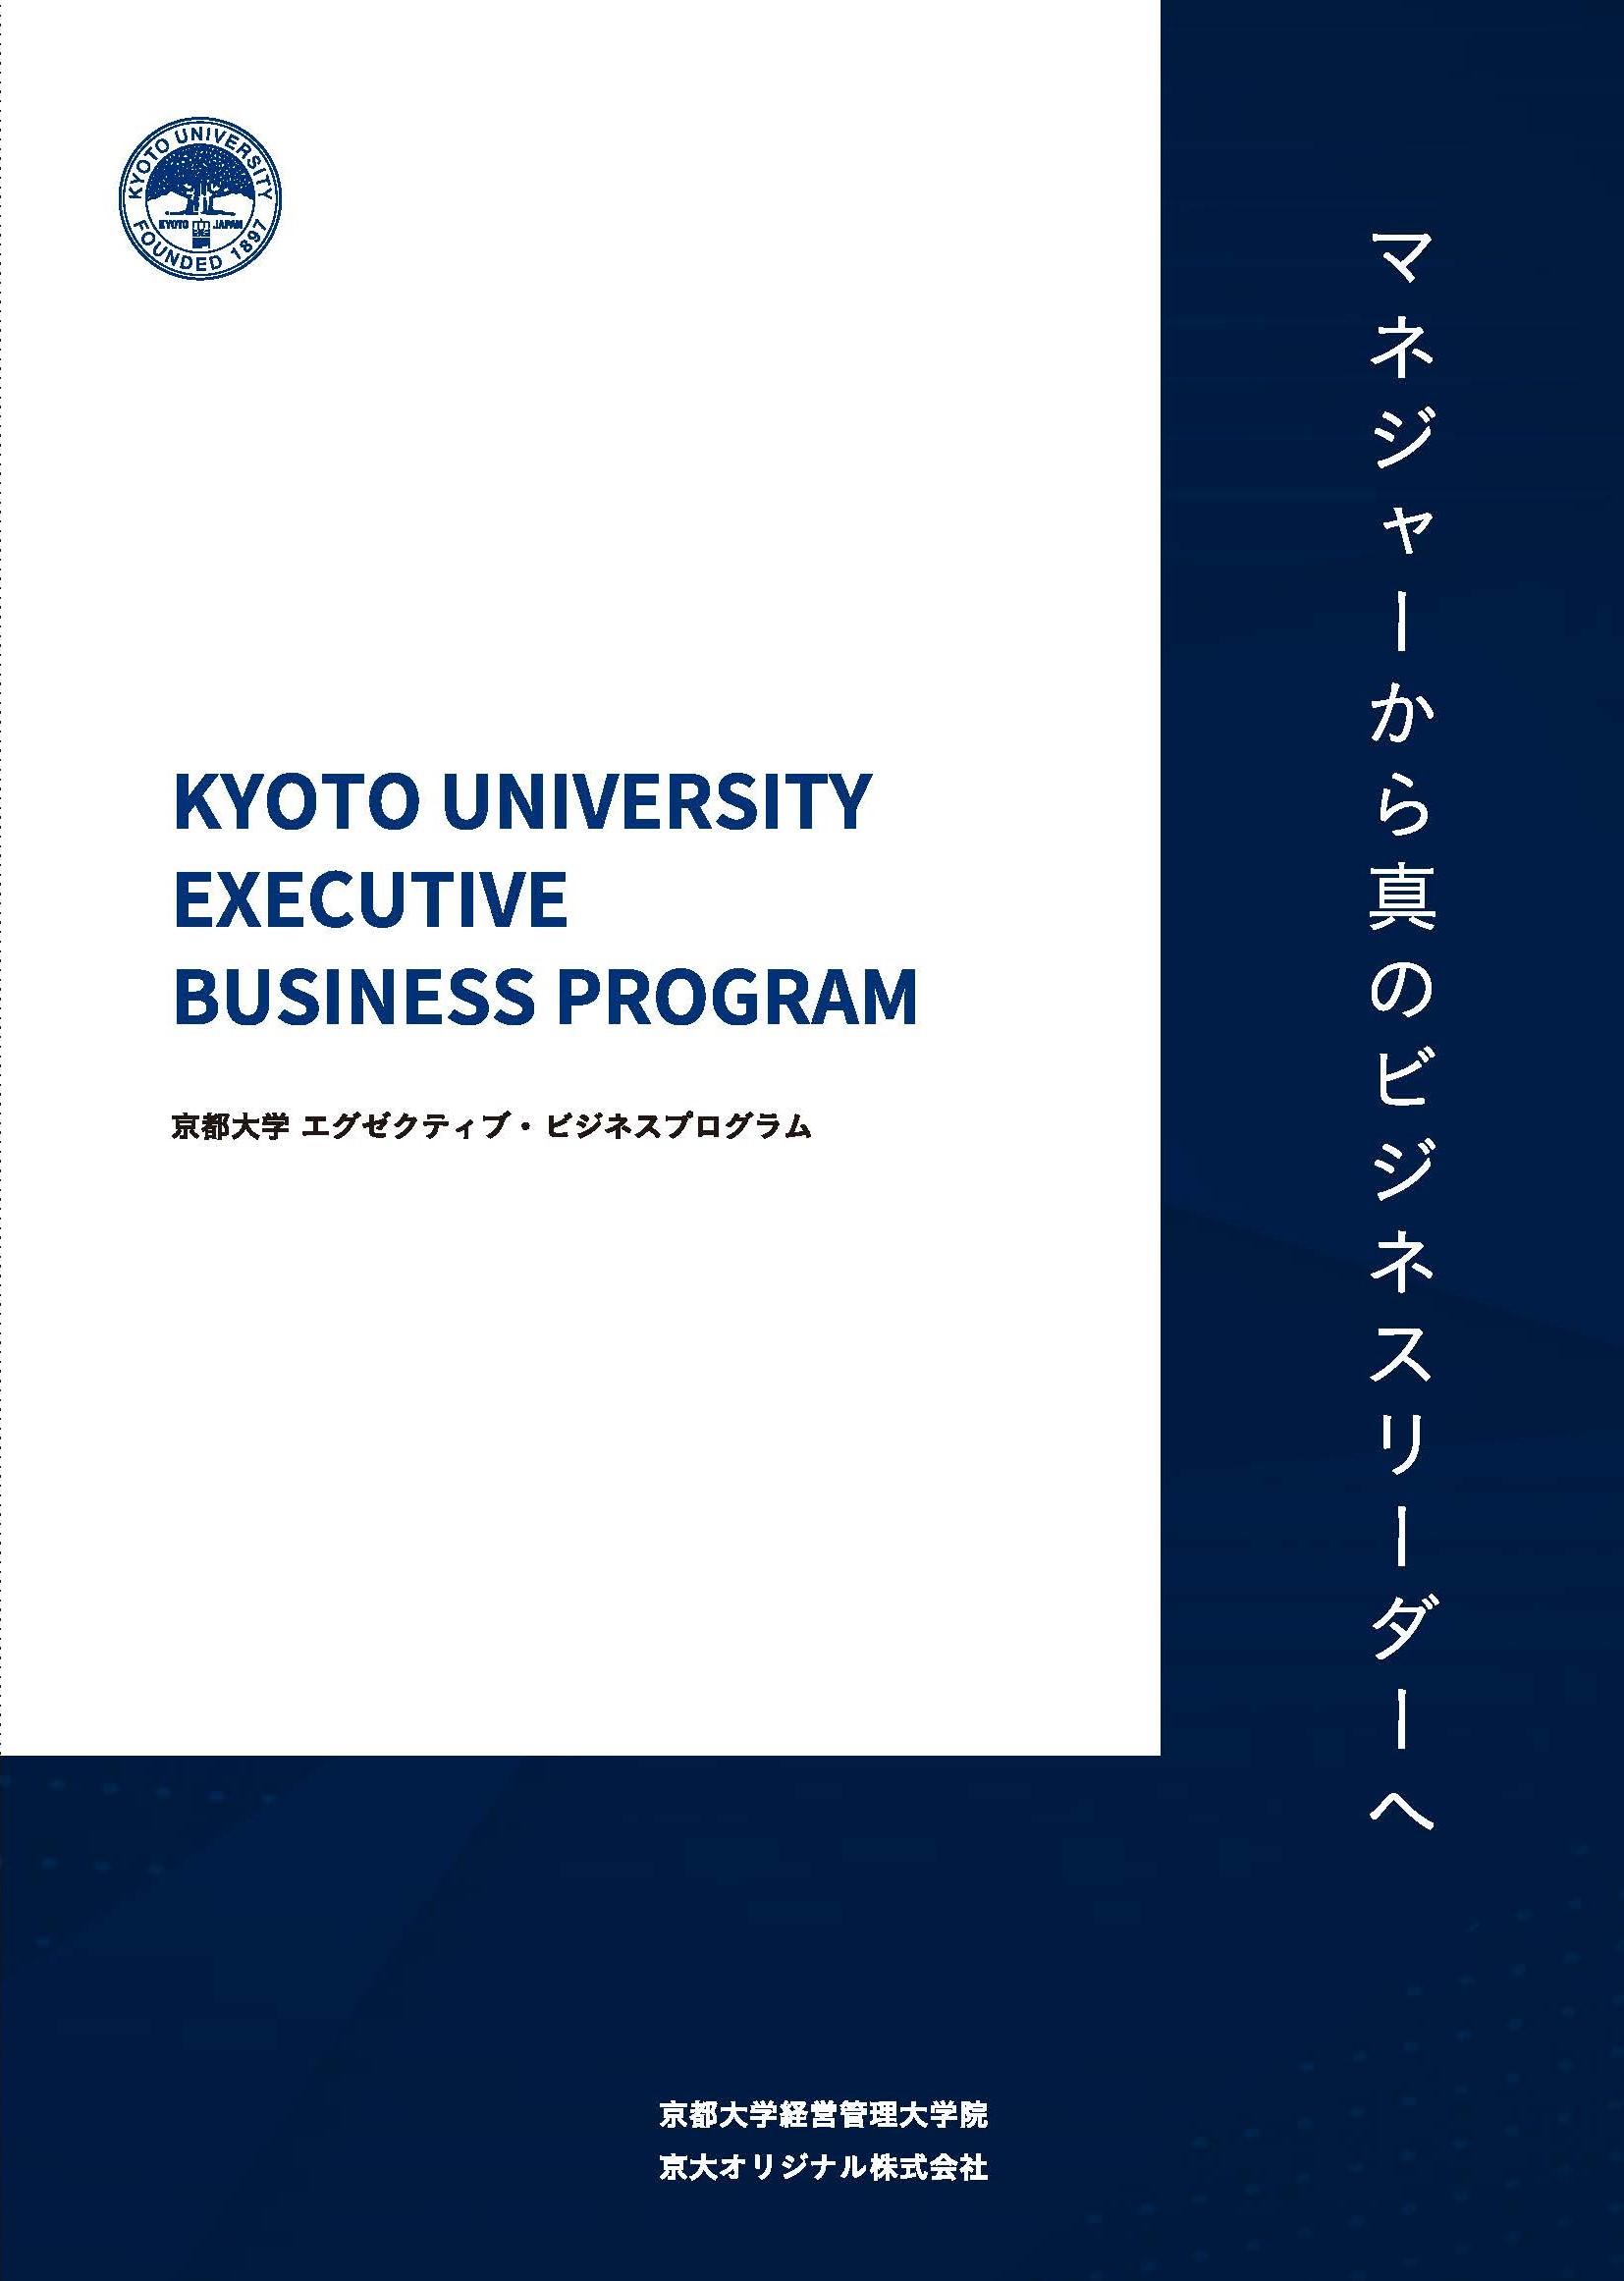 京都大学エグゼクティブ ビジネスプログラムが年6月開講 京大オリジナル株式会社のプレスリリース